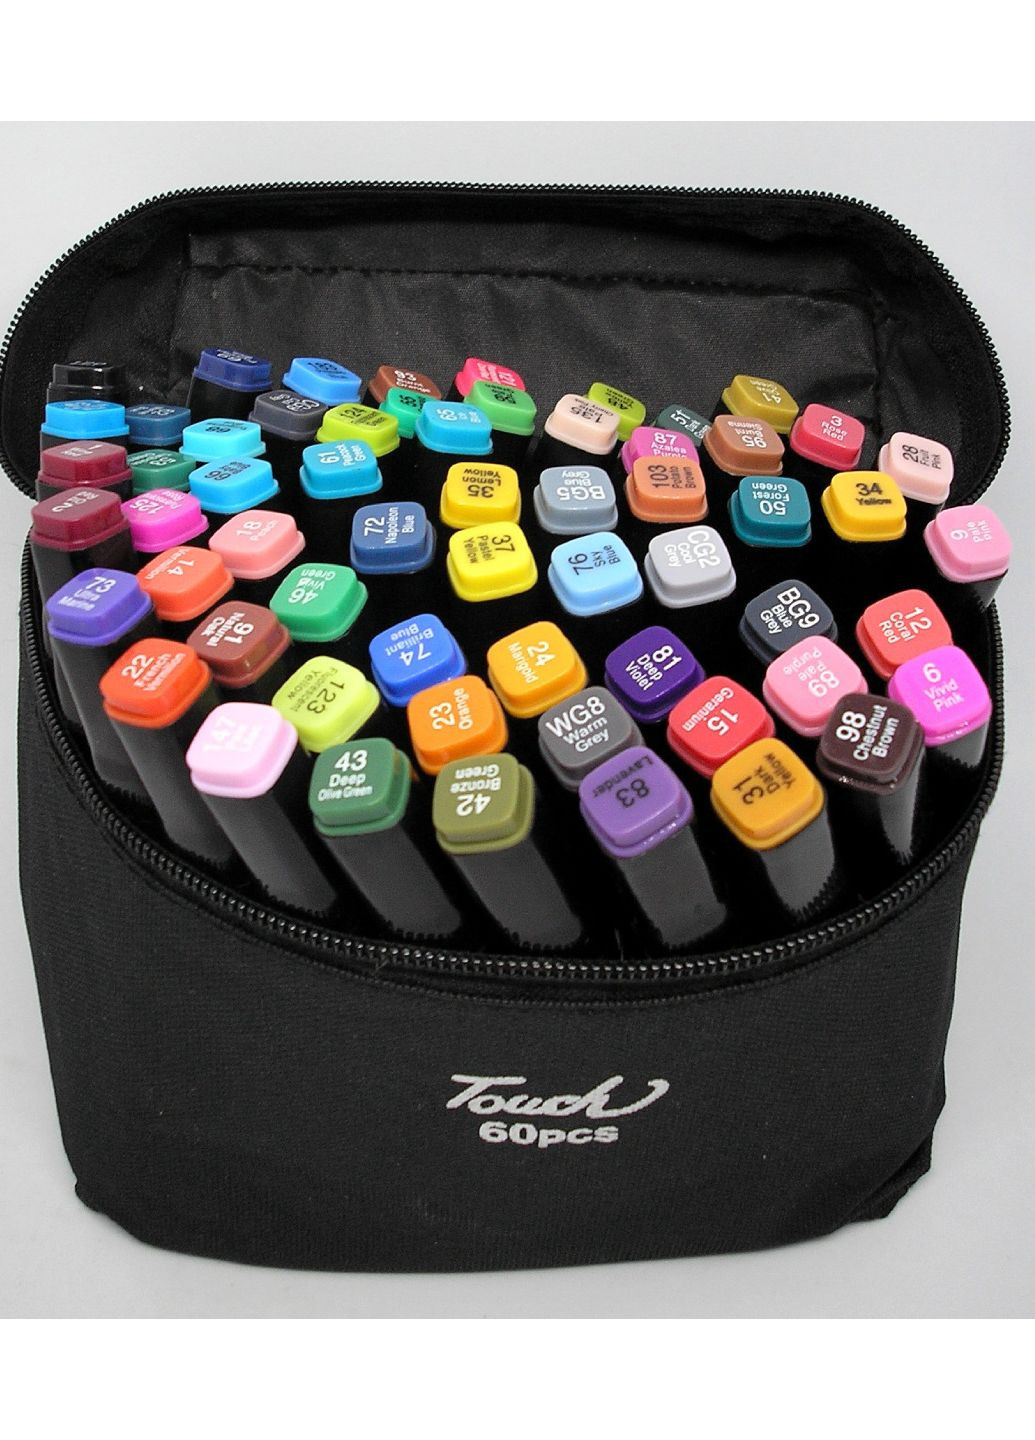 Скетч маркеры двухсторонние 60 шт фломастеры спиртовые набор в сумке по номерам Touch (260063566)